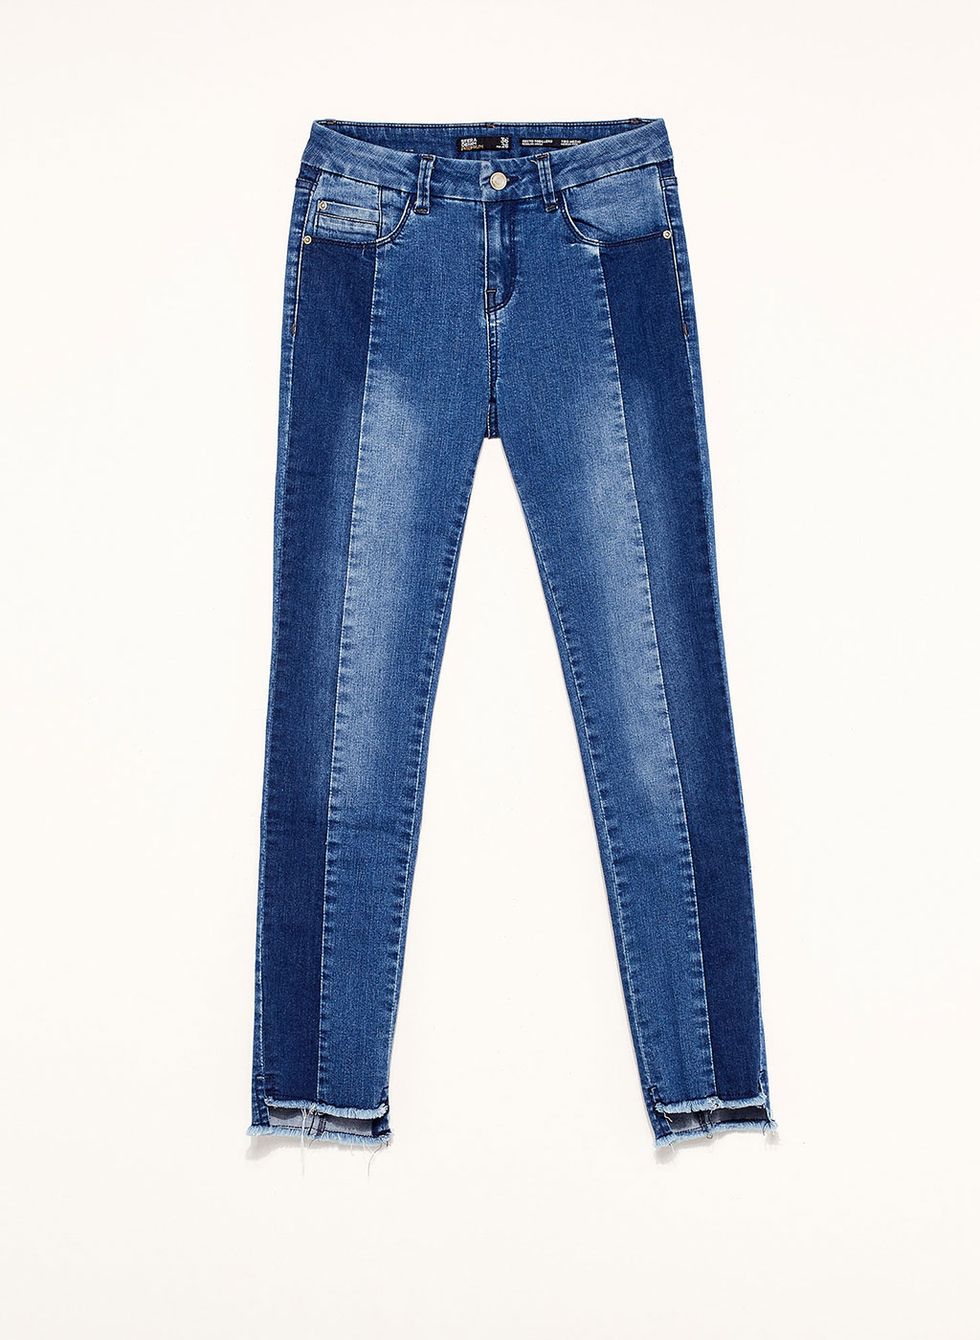 Denim, Jeans, Clothing, Blue, Pocket, Textile, Trousers, Electric blue, Waist, 